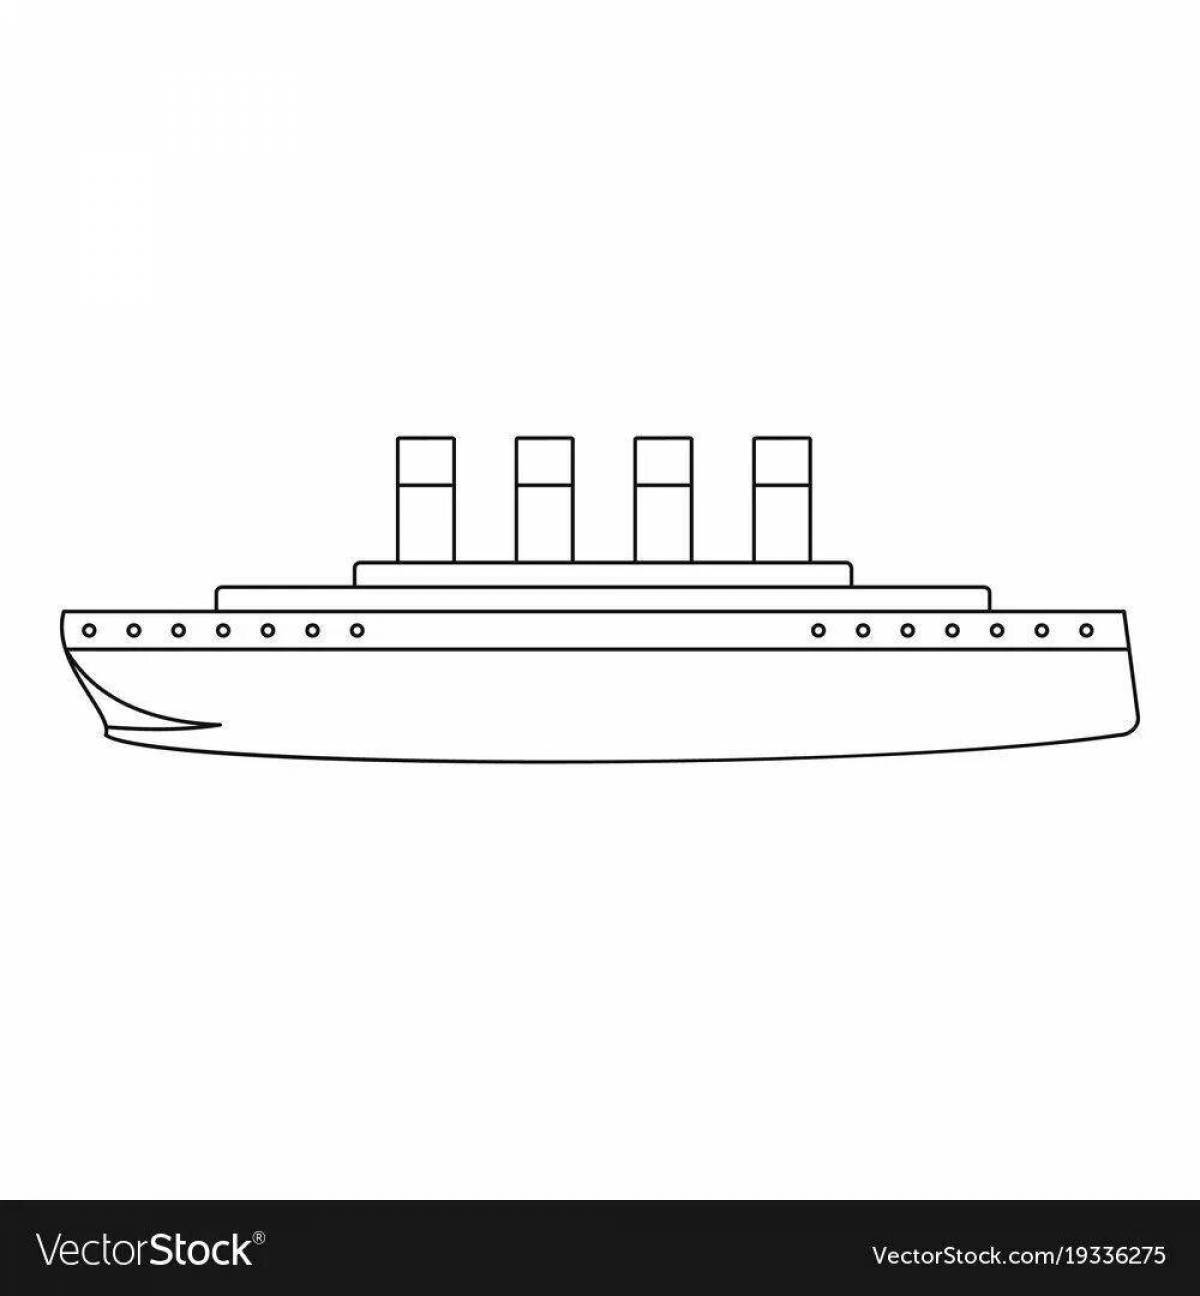 Титаник для детей #12